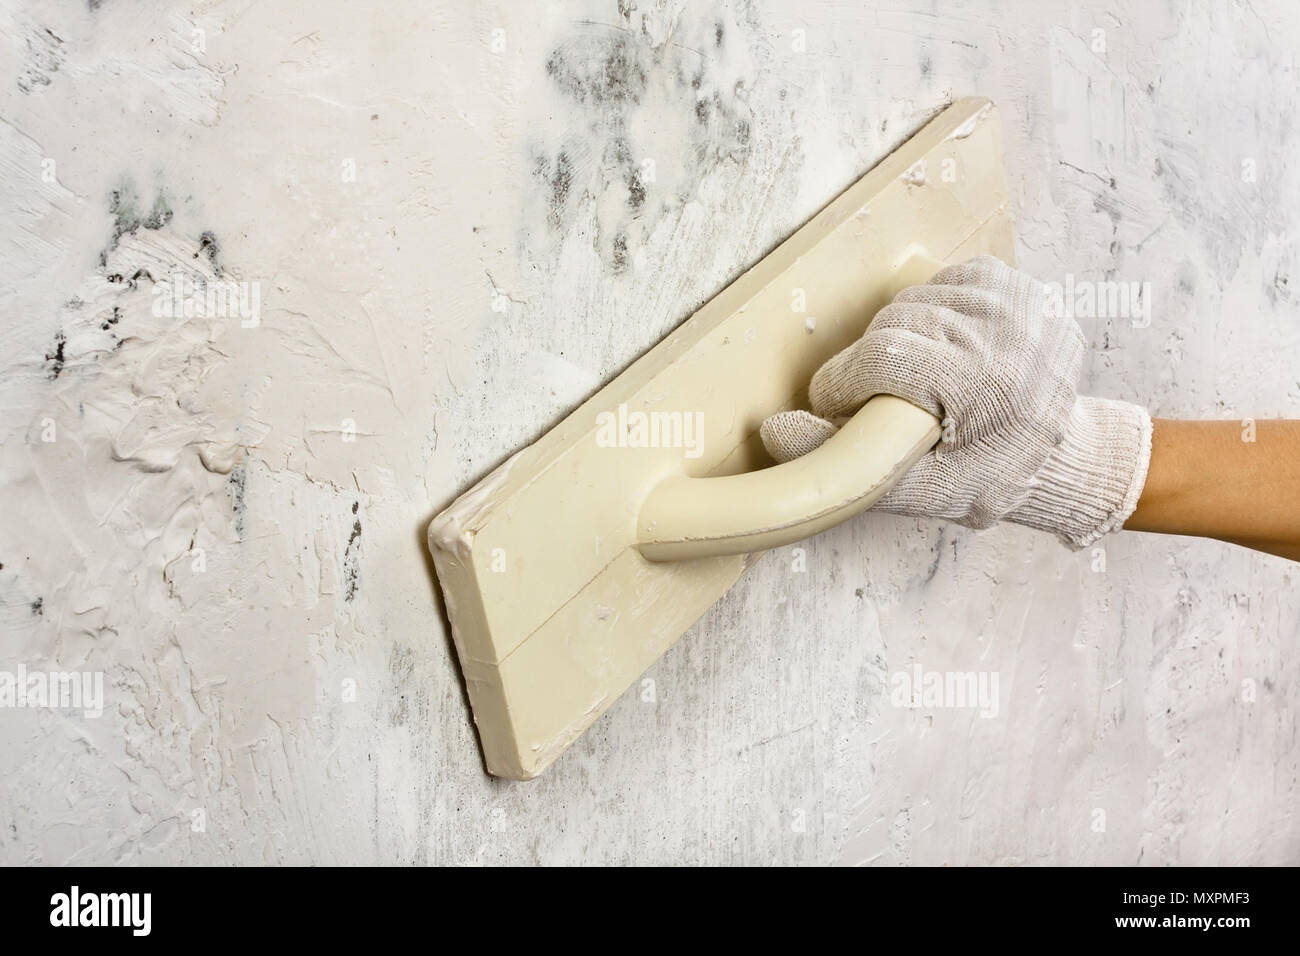 La main avec une truelle de lissage et de plâtrage de mur de béton durant la réparation Banque D'Images